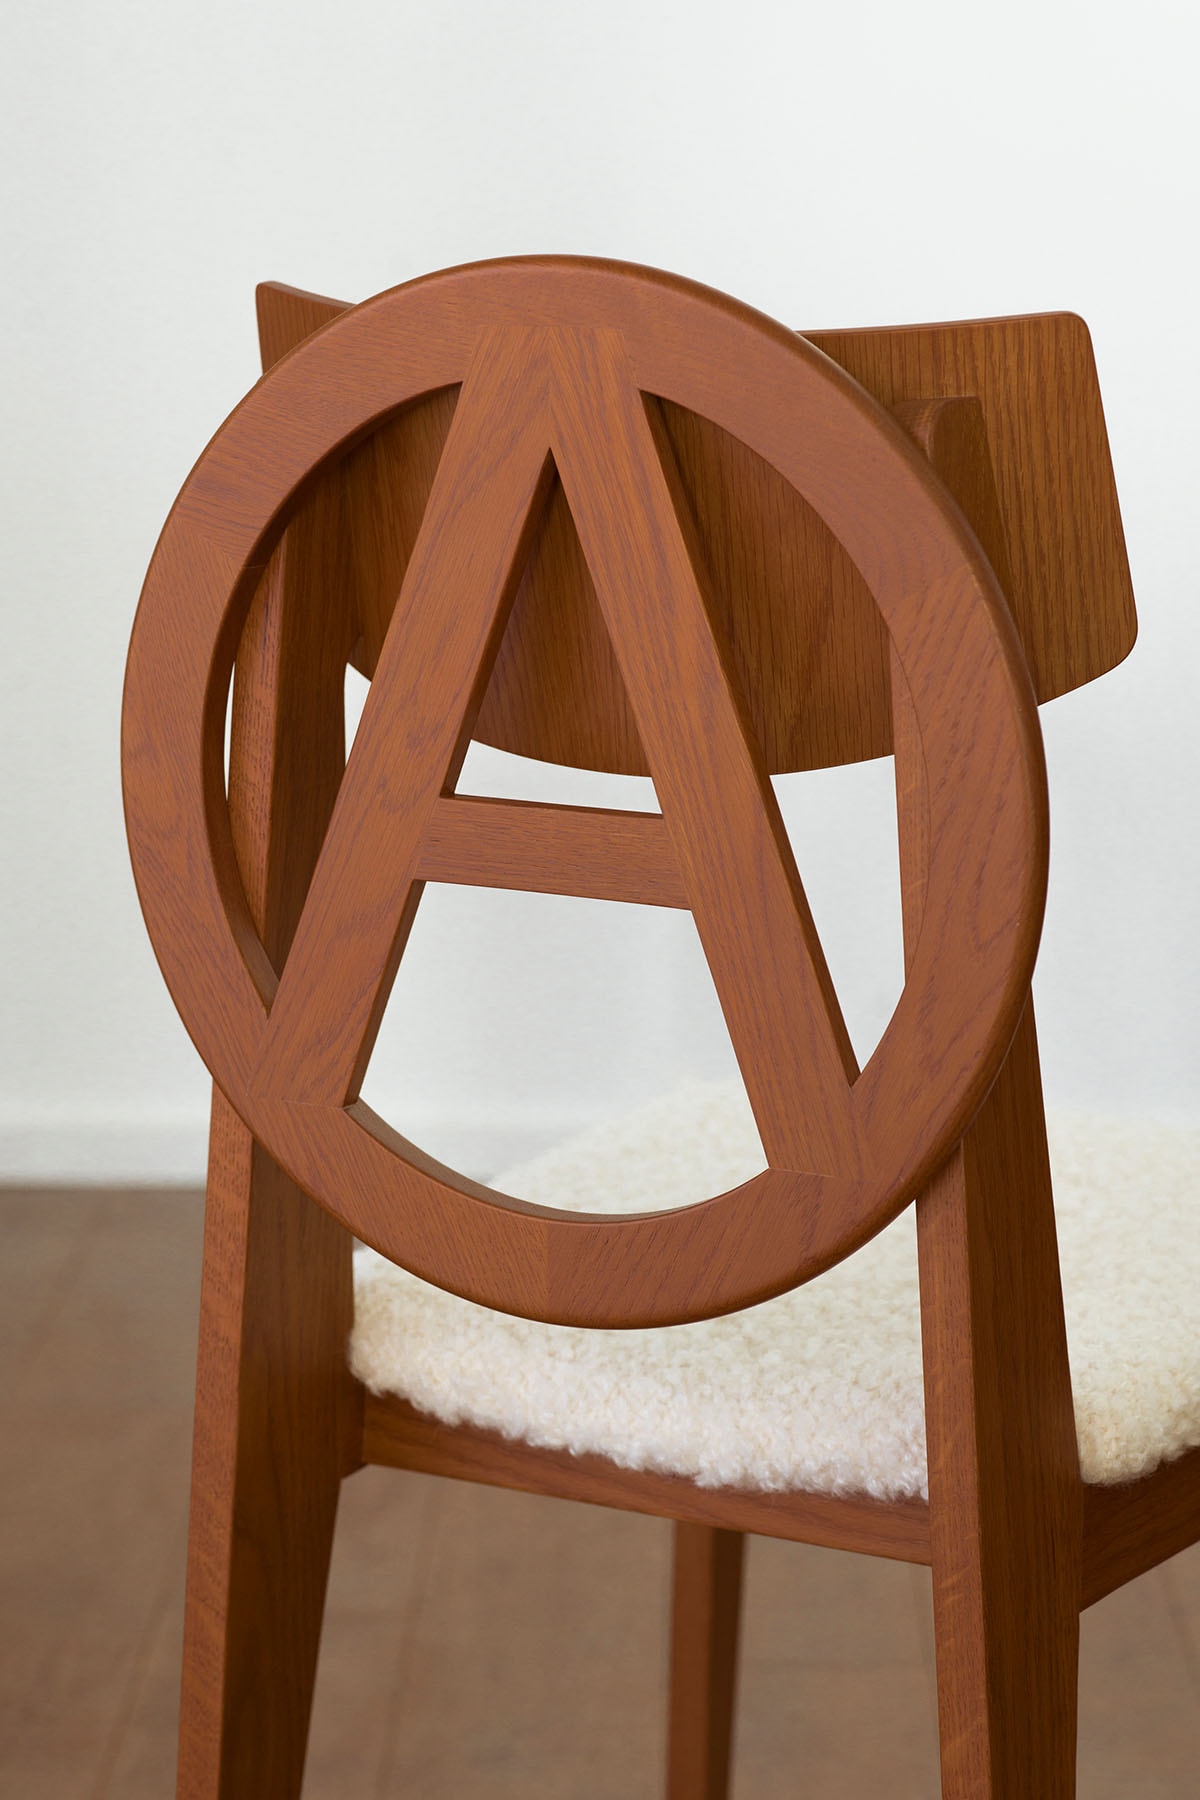 アンダーカバーから天童木工製作のアナーキーチェアが発売 UNDERCOVER x TENDO MOKKO collab Anarchy Chair release info